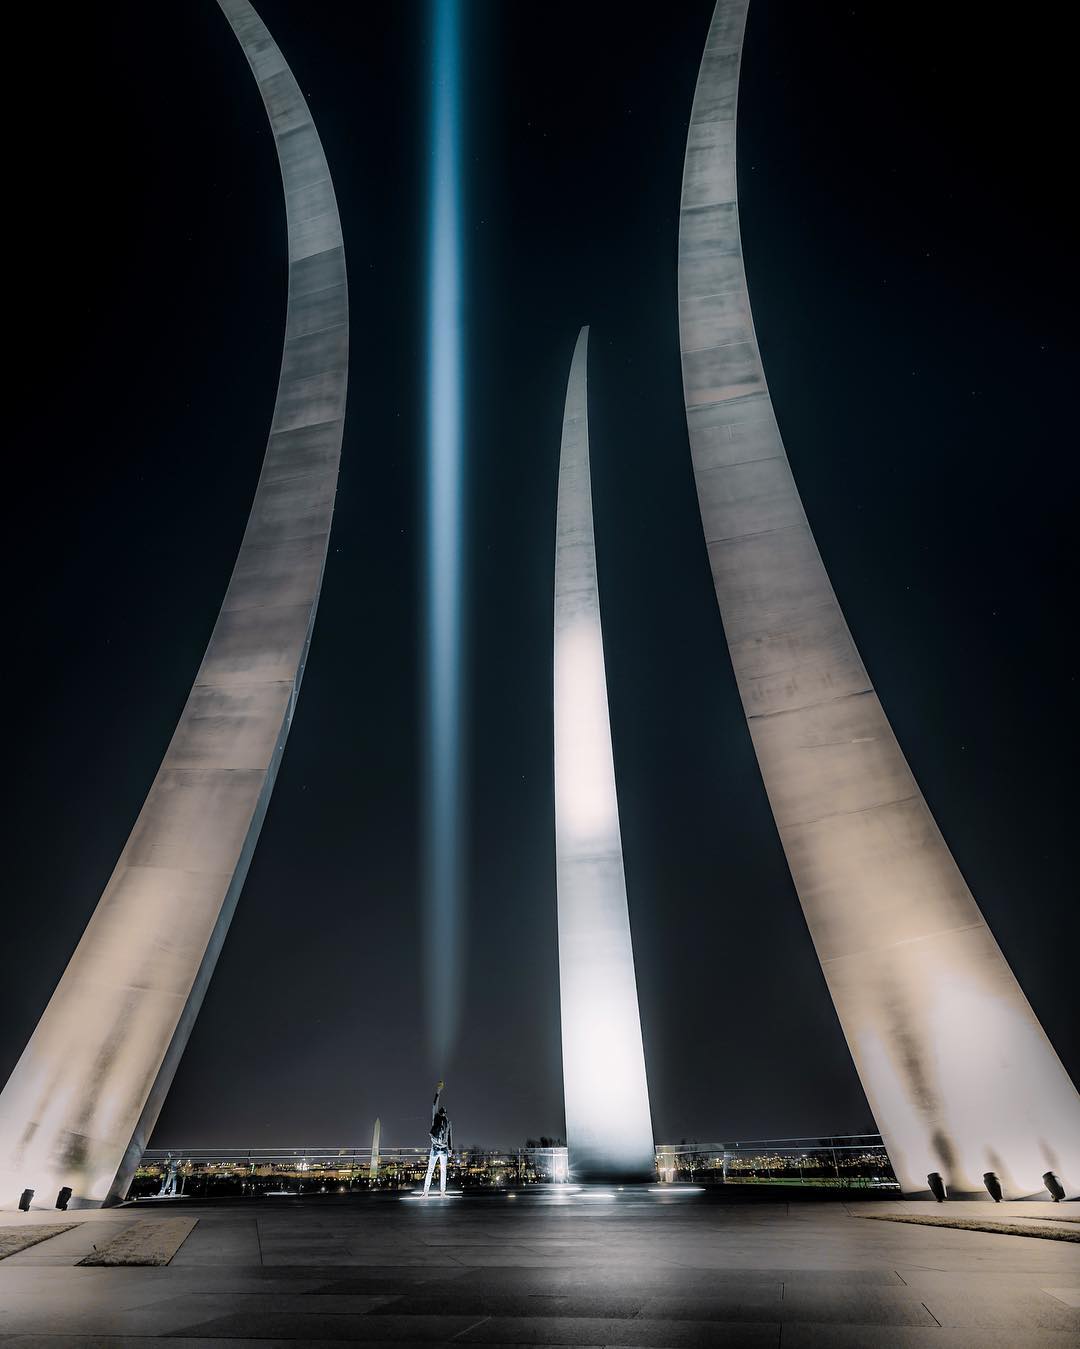 @floodthesensor - Memorial de la Fuerza Aérea de los Estados Unidos en la noche - Monumento militar en Virginia cerca de Washington, DC